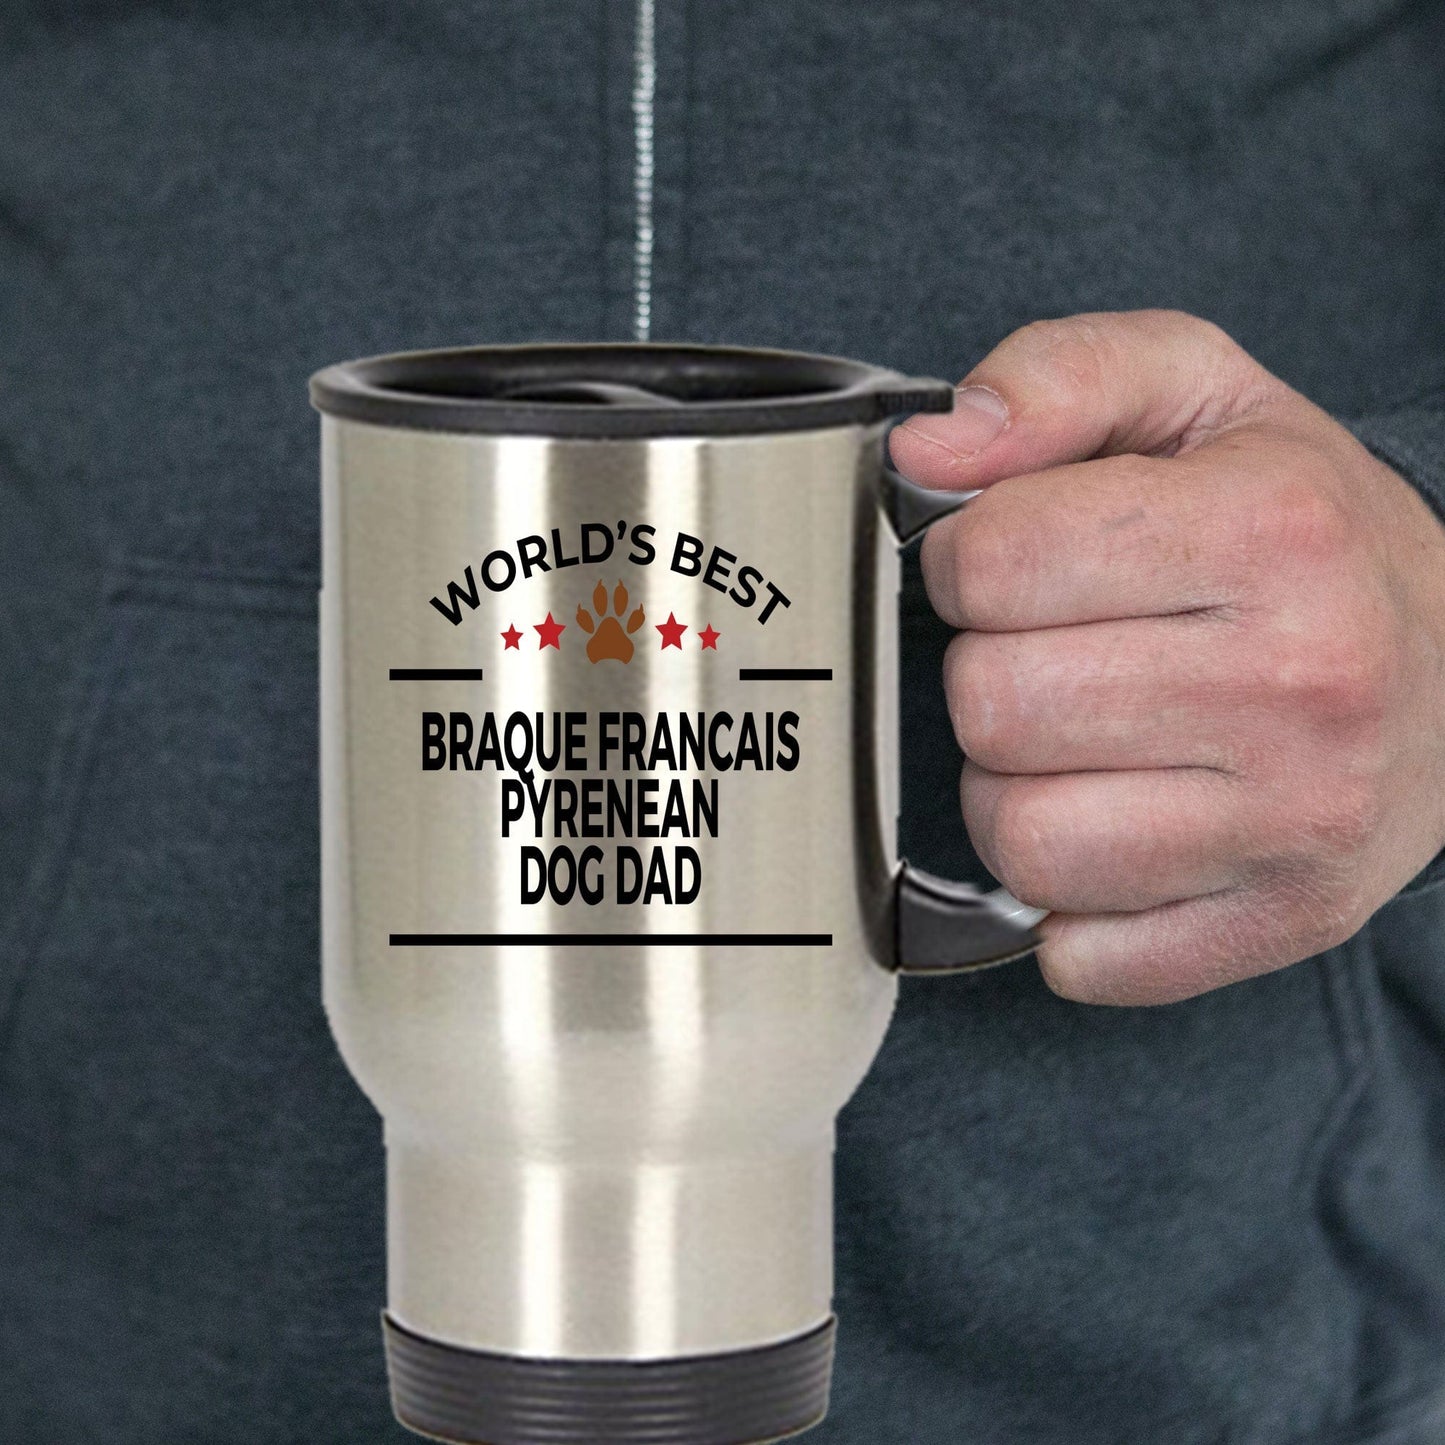 Braque Francais Pyrenean Dog Dad Travel Coffee Mug